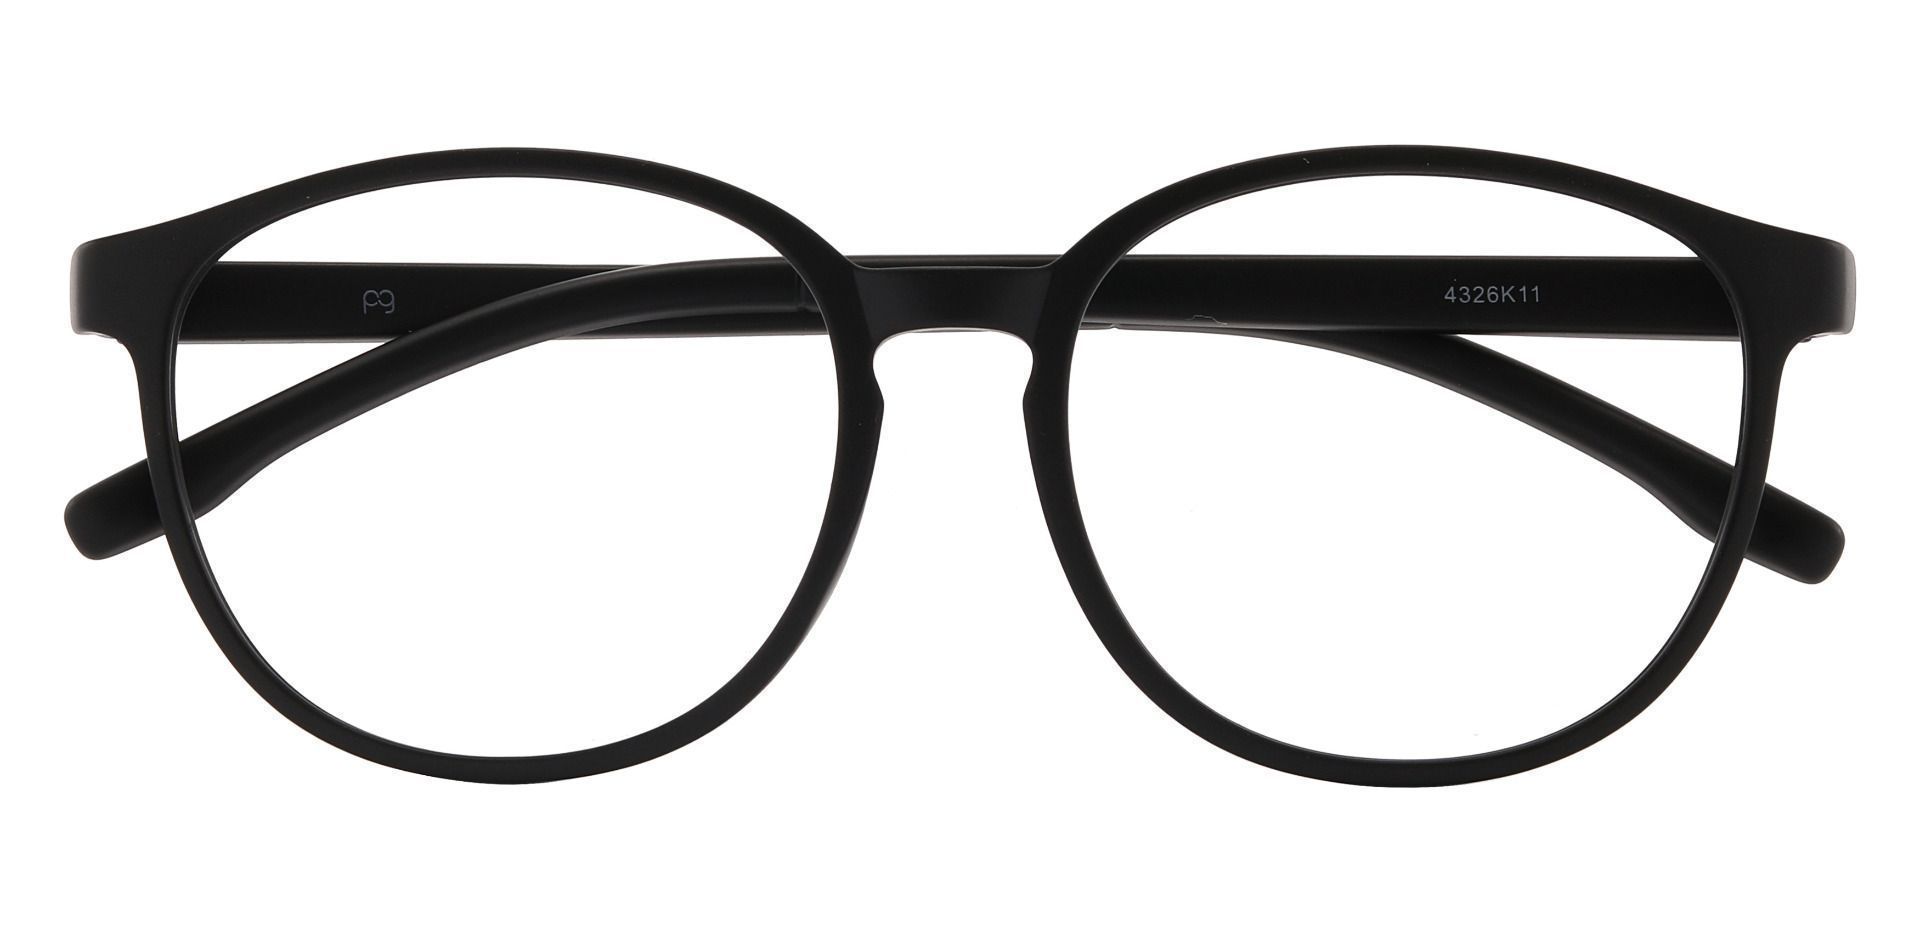 Molasses Oval Non-Rx Glasses - Black